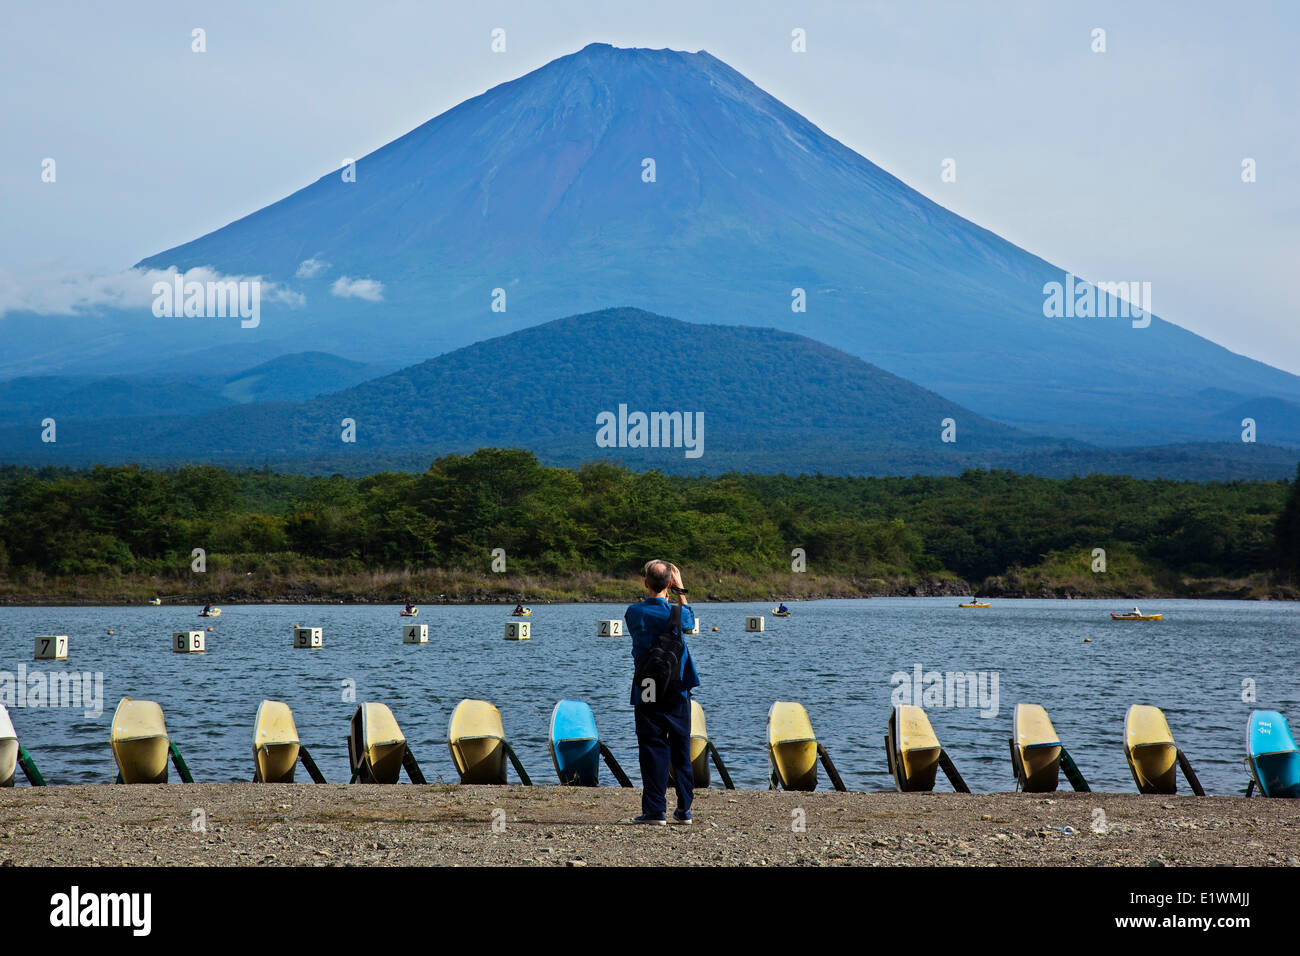 Mount Fuji gesehen von den Ufern des Sees Shoji, die kleinste der fünf Seen entlang der nördlichen Fuß des Vulkans. Weitgehend und Stockfoto